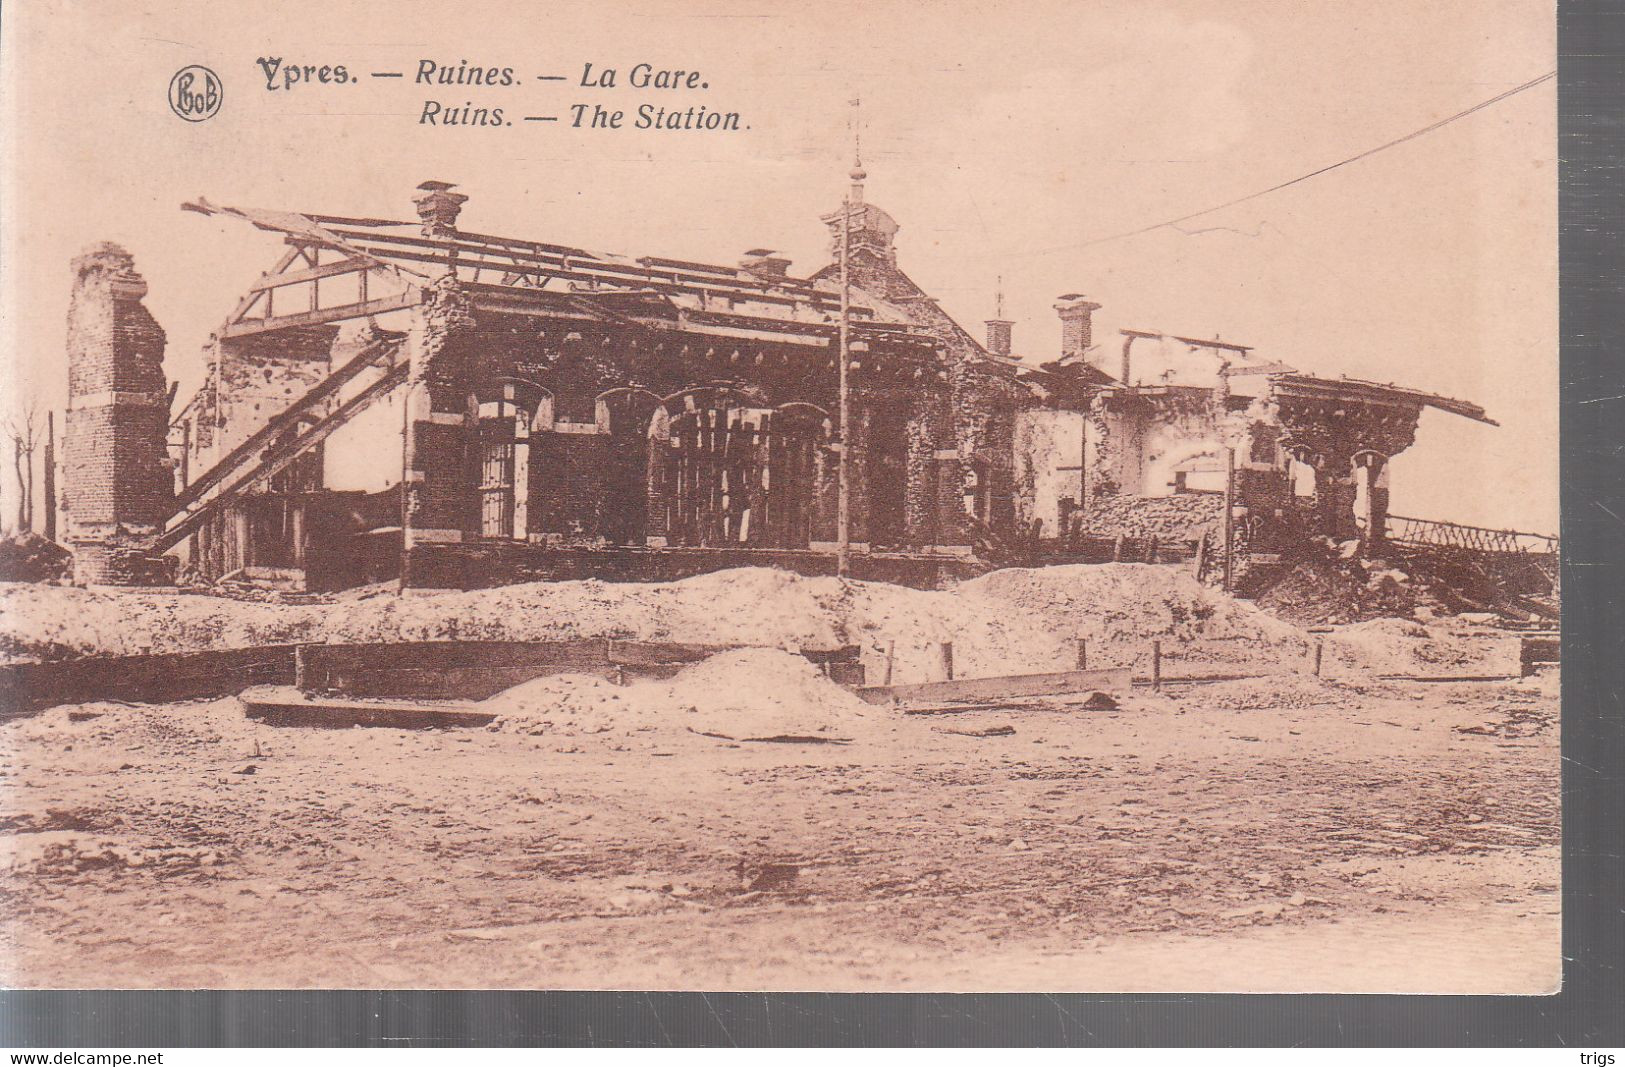 Ypres - Ruines, La Gare - Ieper